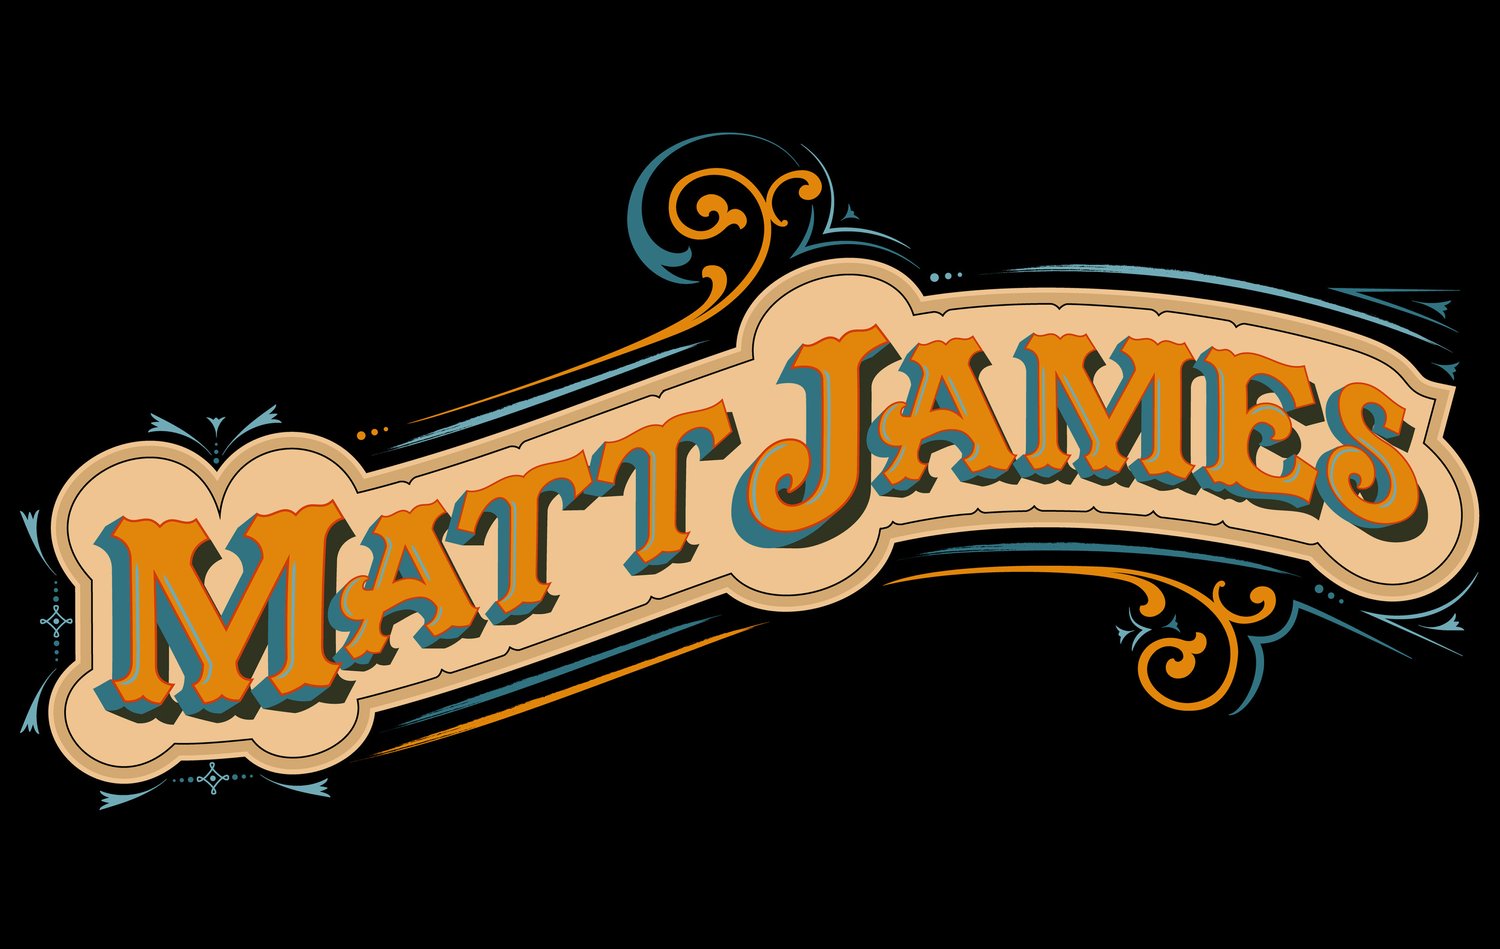 Matt James